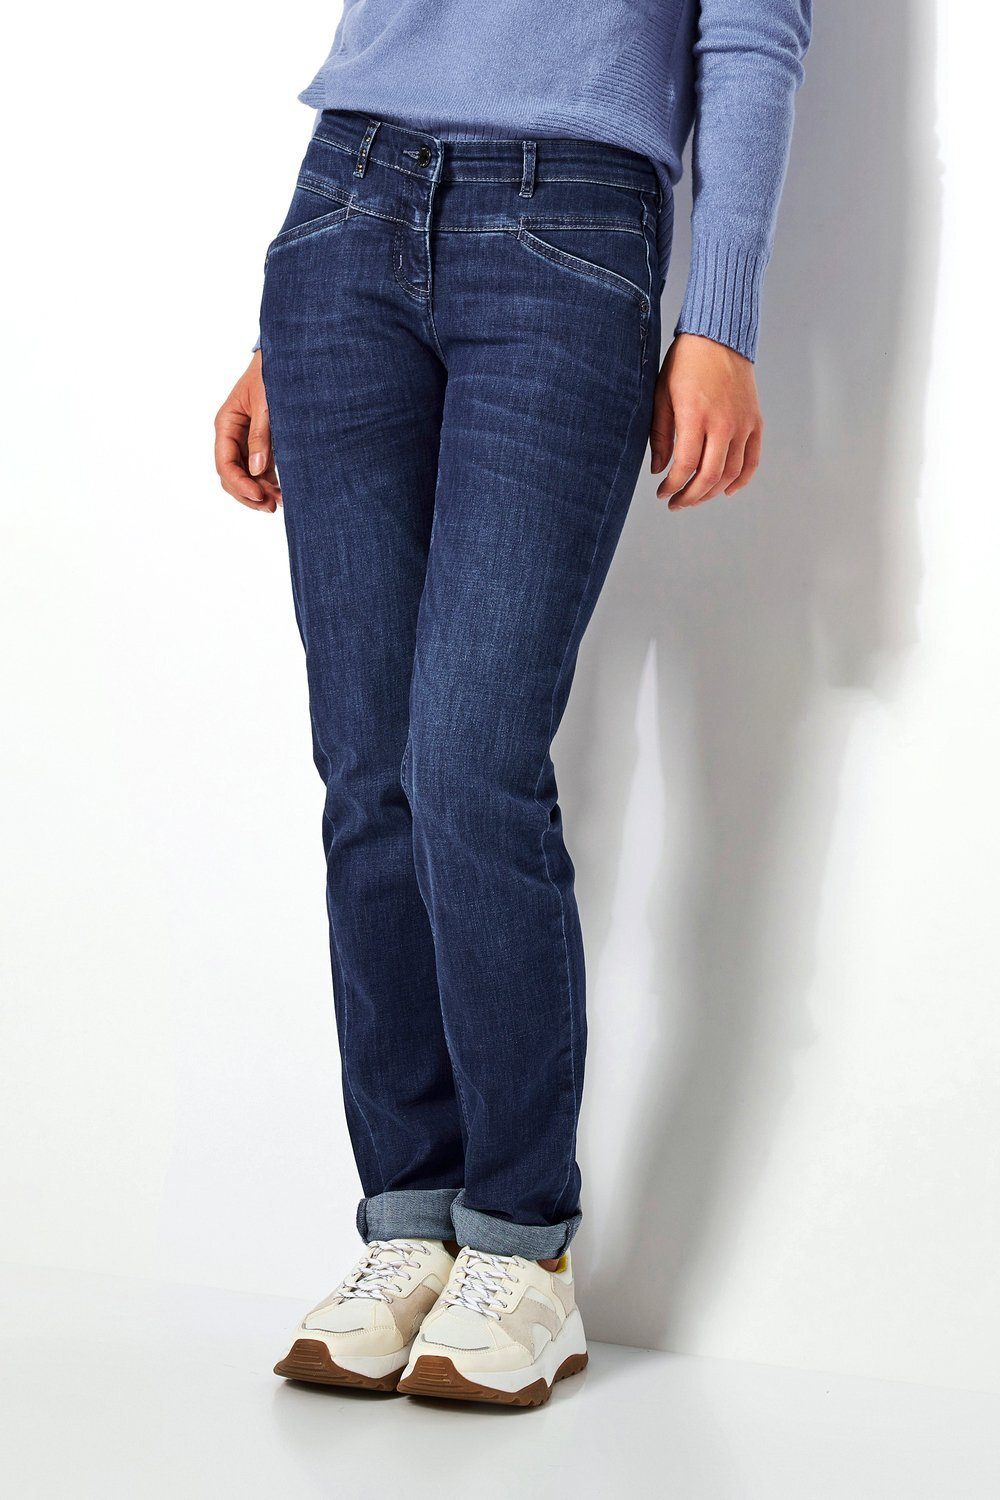 Neue Artikel treffen nacheinander ein TONI Slim-fit-Jeans Perfect vorne mit Hüftsattel mittelblau - 564 Shape